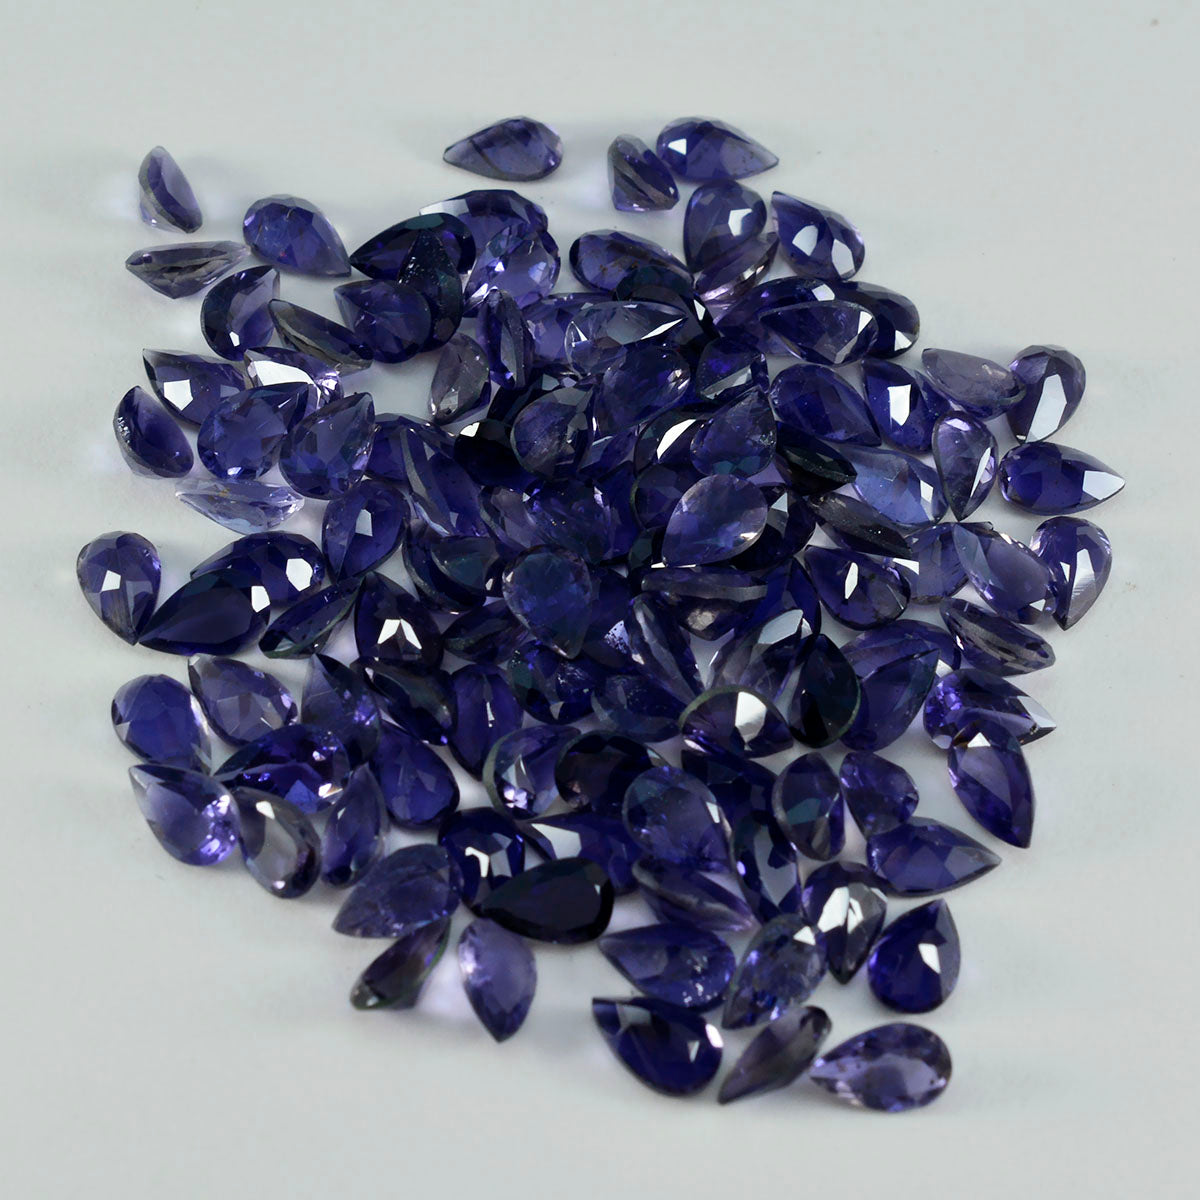 riyogems 1шт синий иолит ограненный 4х6 мм камень грушевидной формы хорошее качество